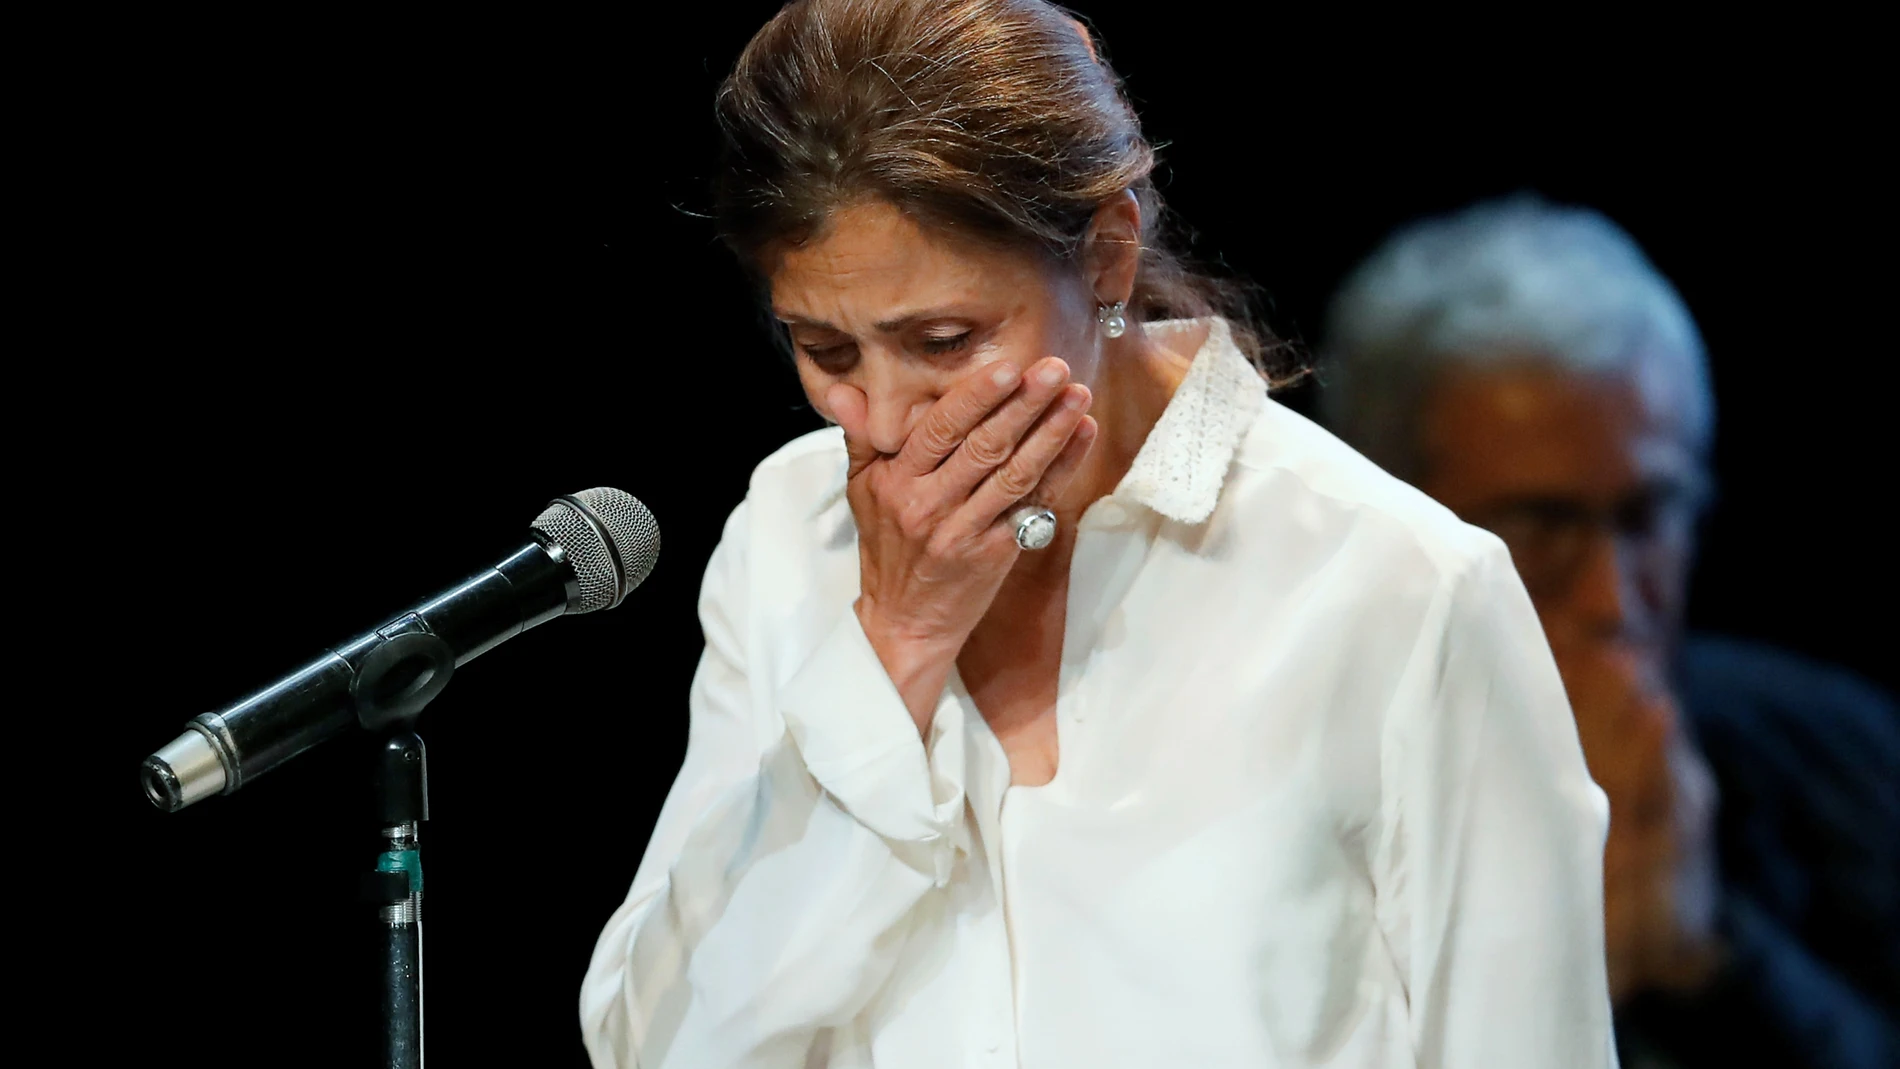 La ex candidata presidencial Ingrid Betancourt, quien estuvo seis años secuestrada por las FARC, se conmueve durante su intervención, el 23 de junio de 2021, en un encuentro con víctimas de secuestro en Bogotá (Colombia). EFE/ Mauricio Dueñas Castañeda